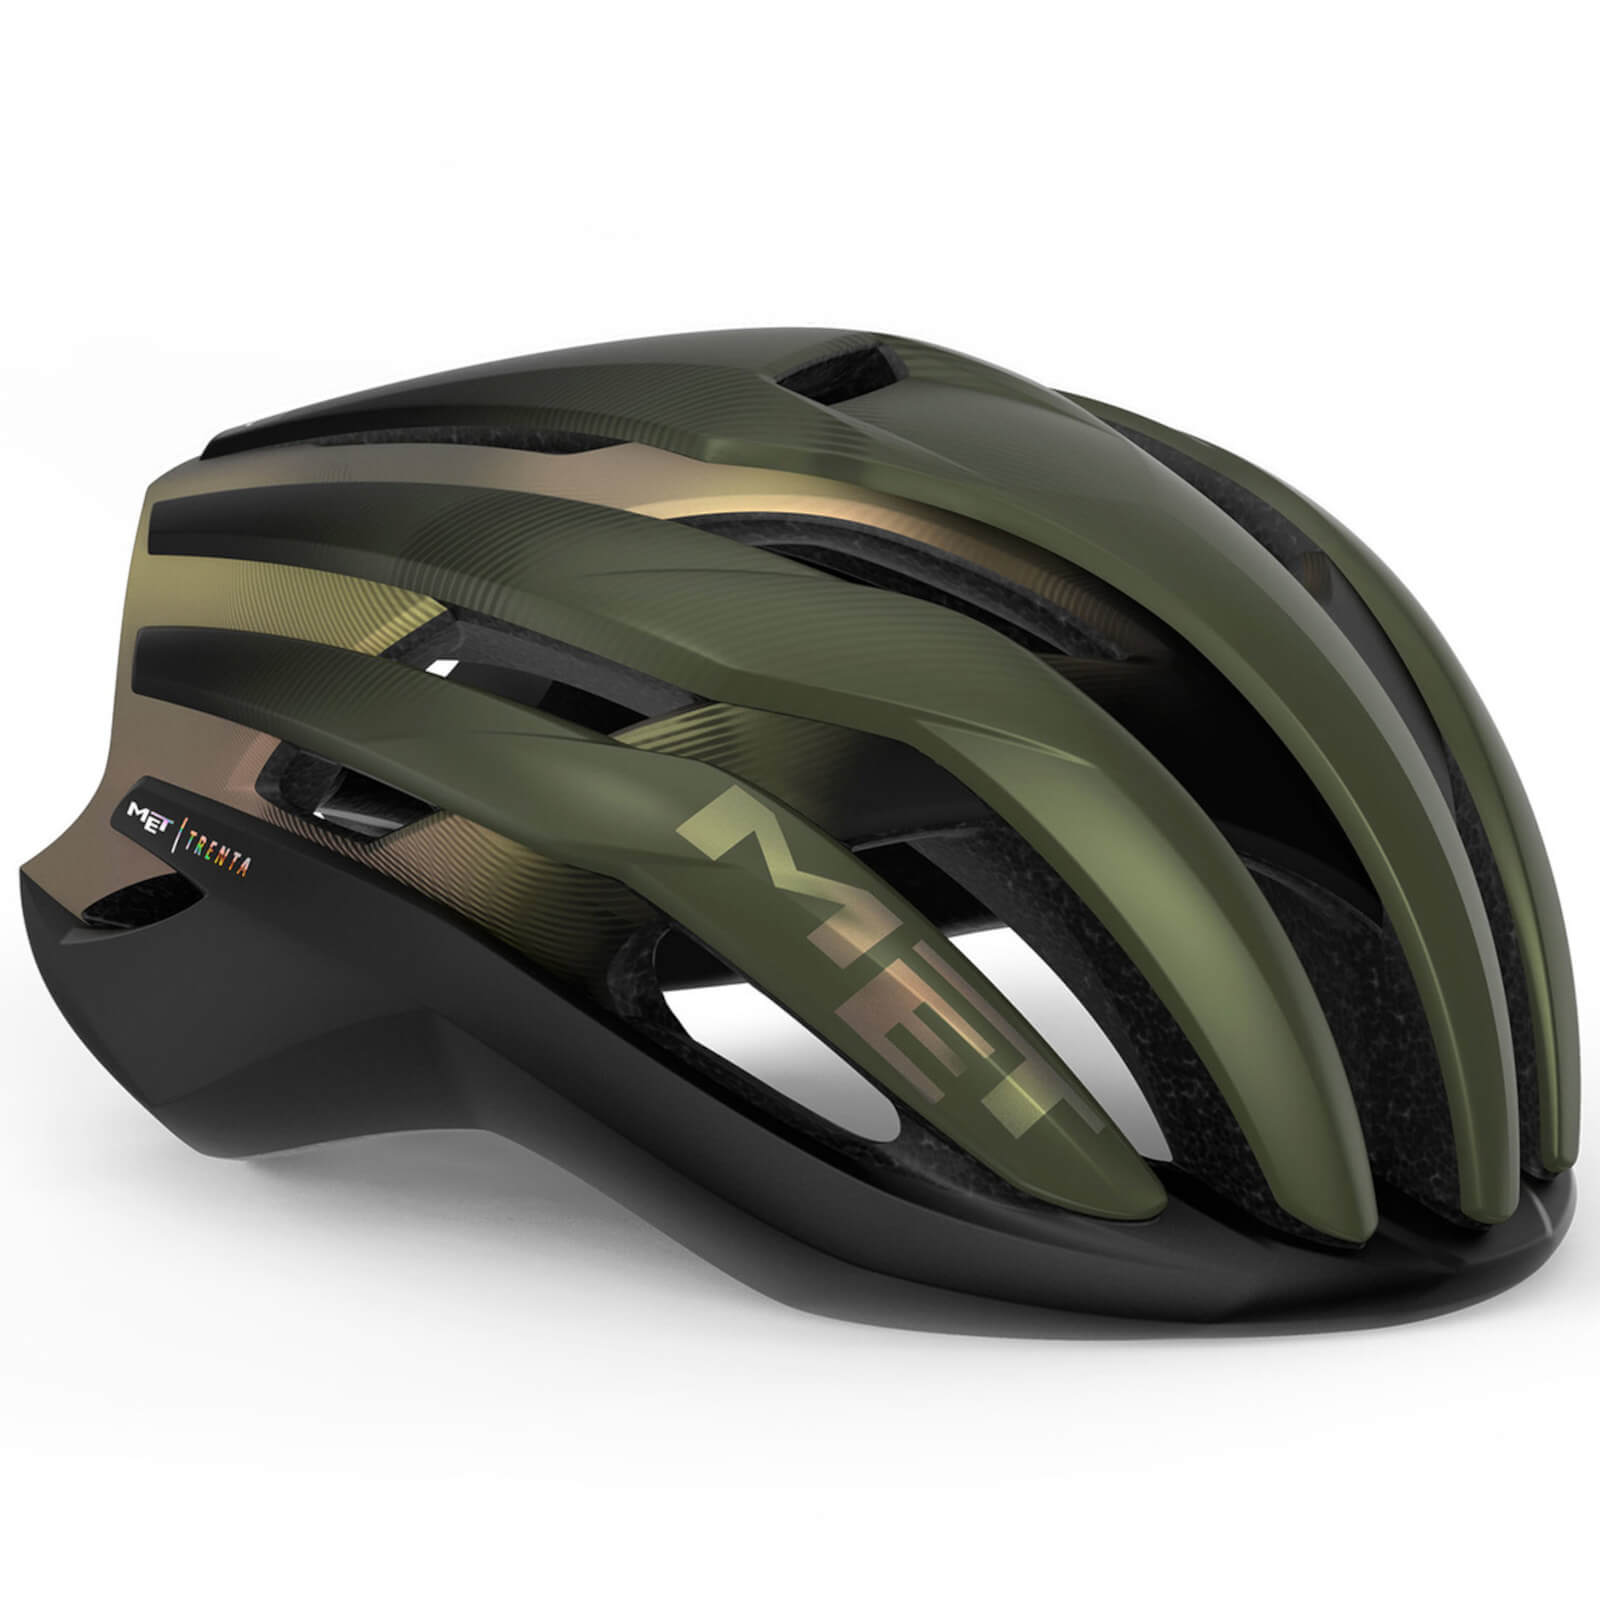 MET Trenta MIPS Road Helmet - L - Olive